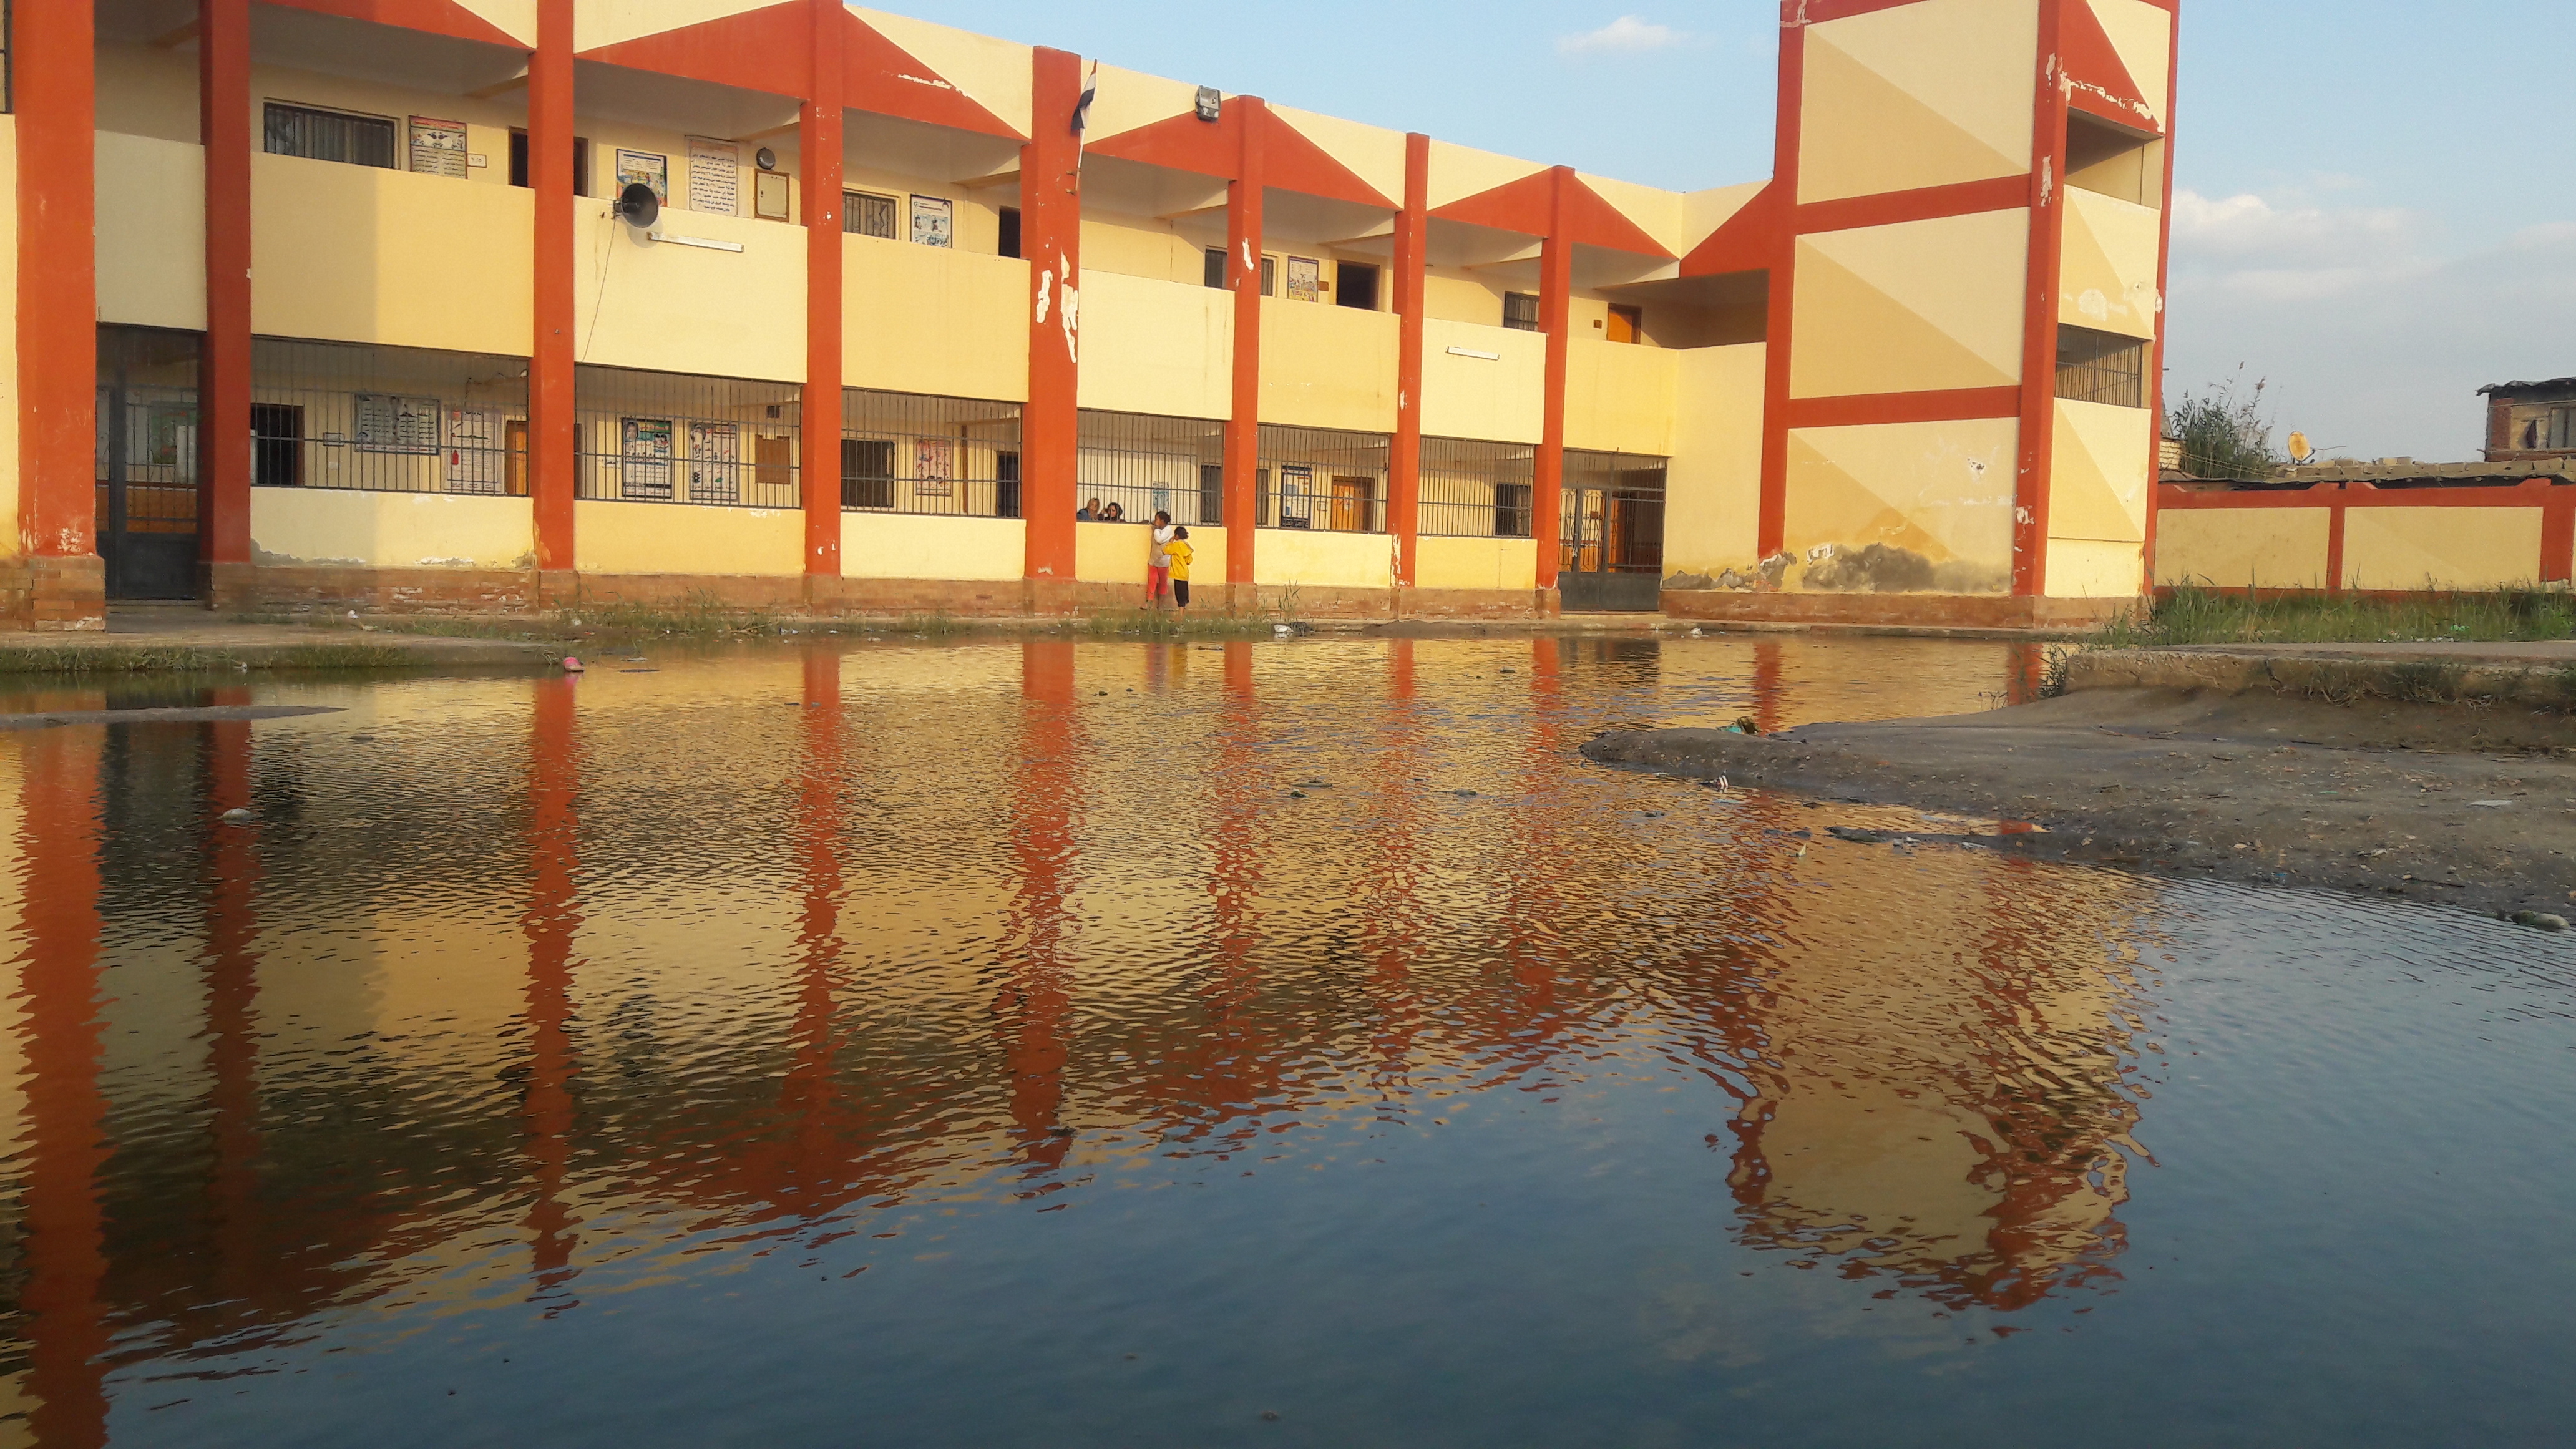 ٢٠١٩مدرسة ببورسعيد تغرق فى مياه المجارى .. واعمدة الكهرباء تهدد أرواح التلاميذ٠٣٠٢_١٦٥٠٠٦ (1)